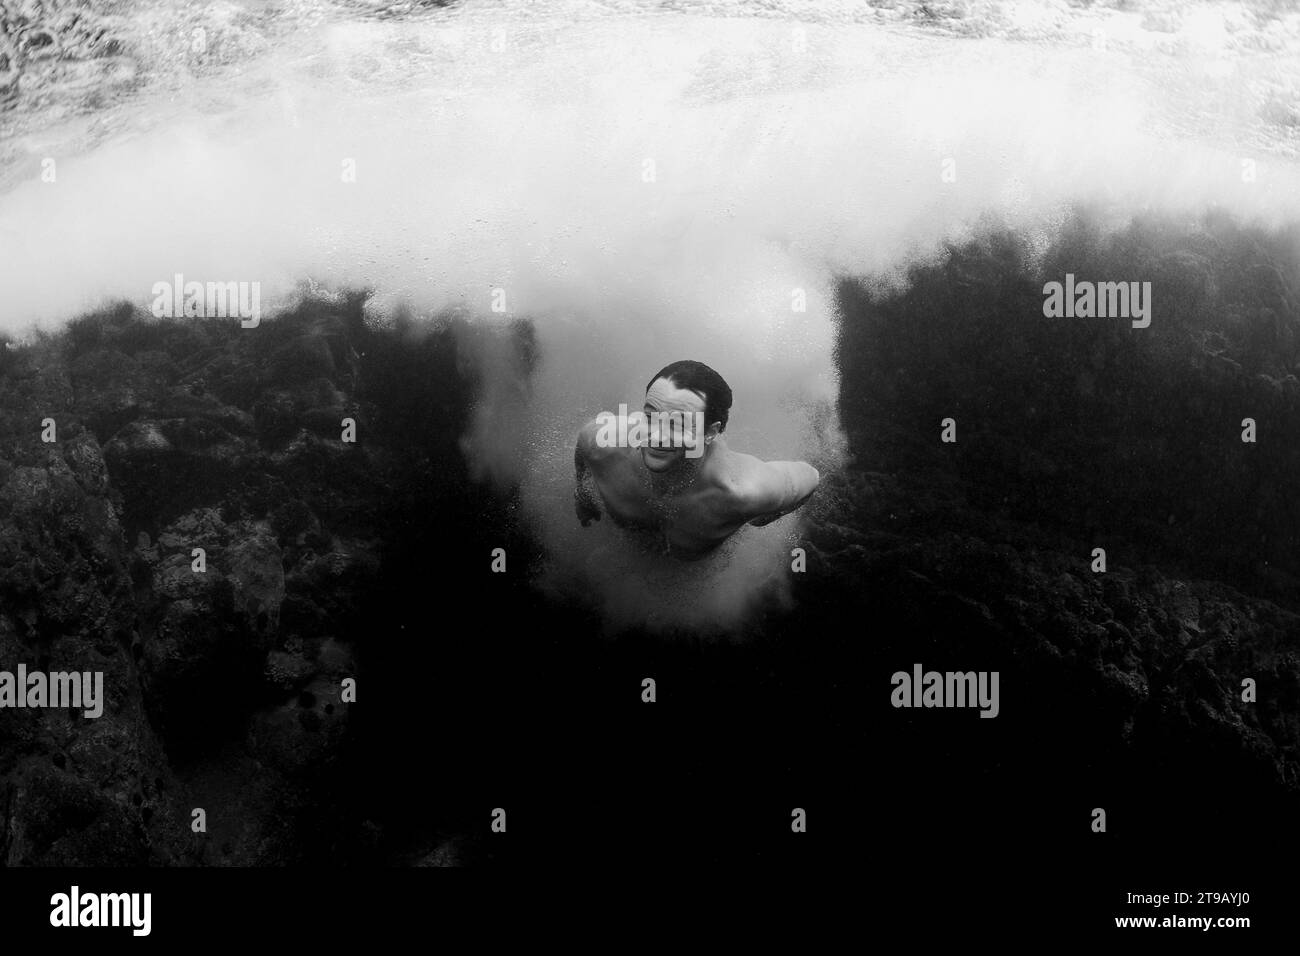 Ein Mann lächelt und schwimmt unter Wasser, nachdem er von einer Klippe gesprungen ist. Stockfoto